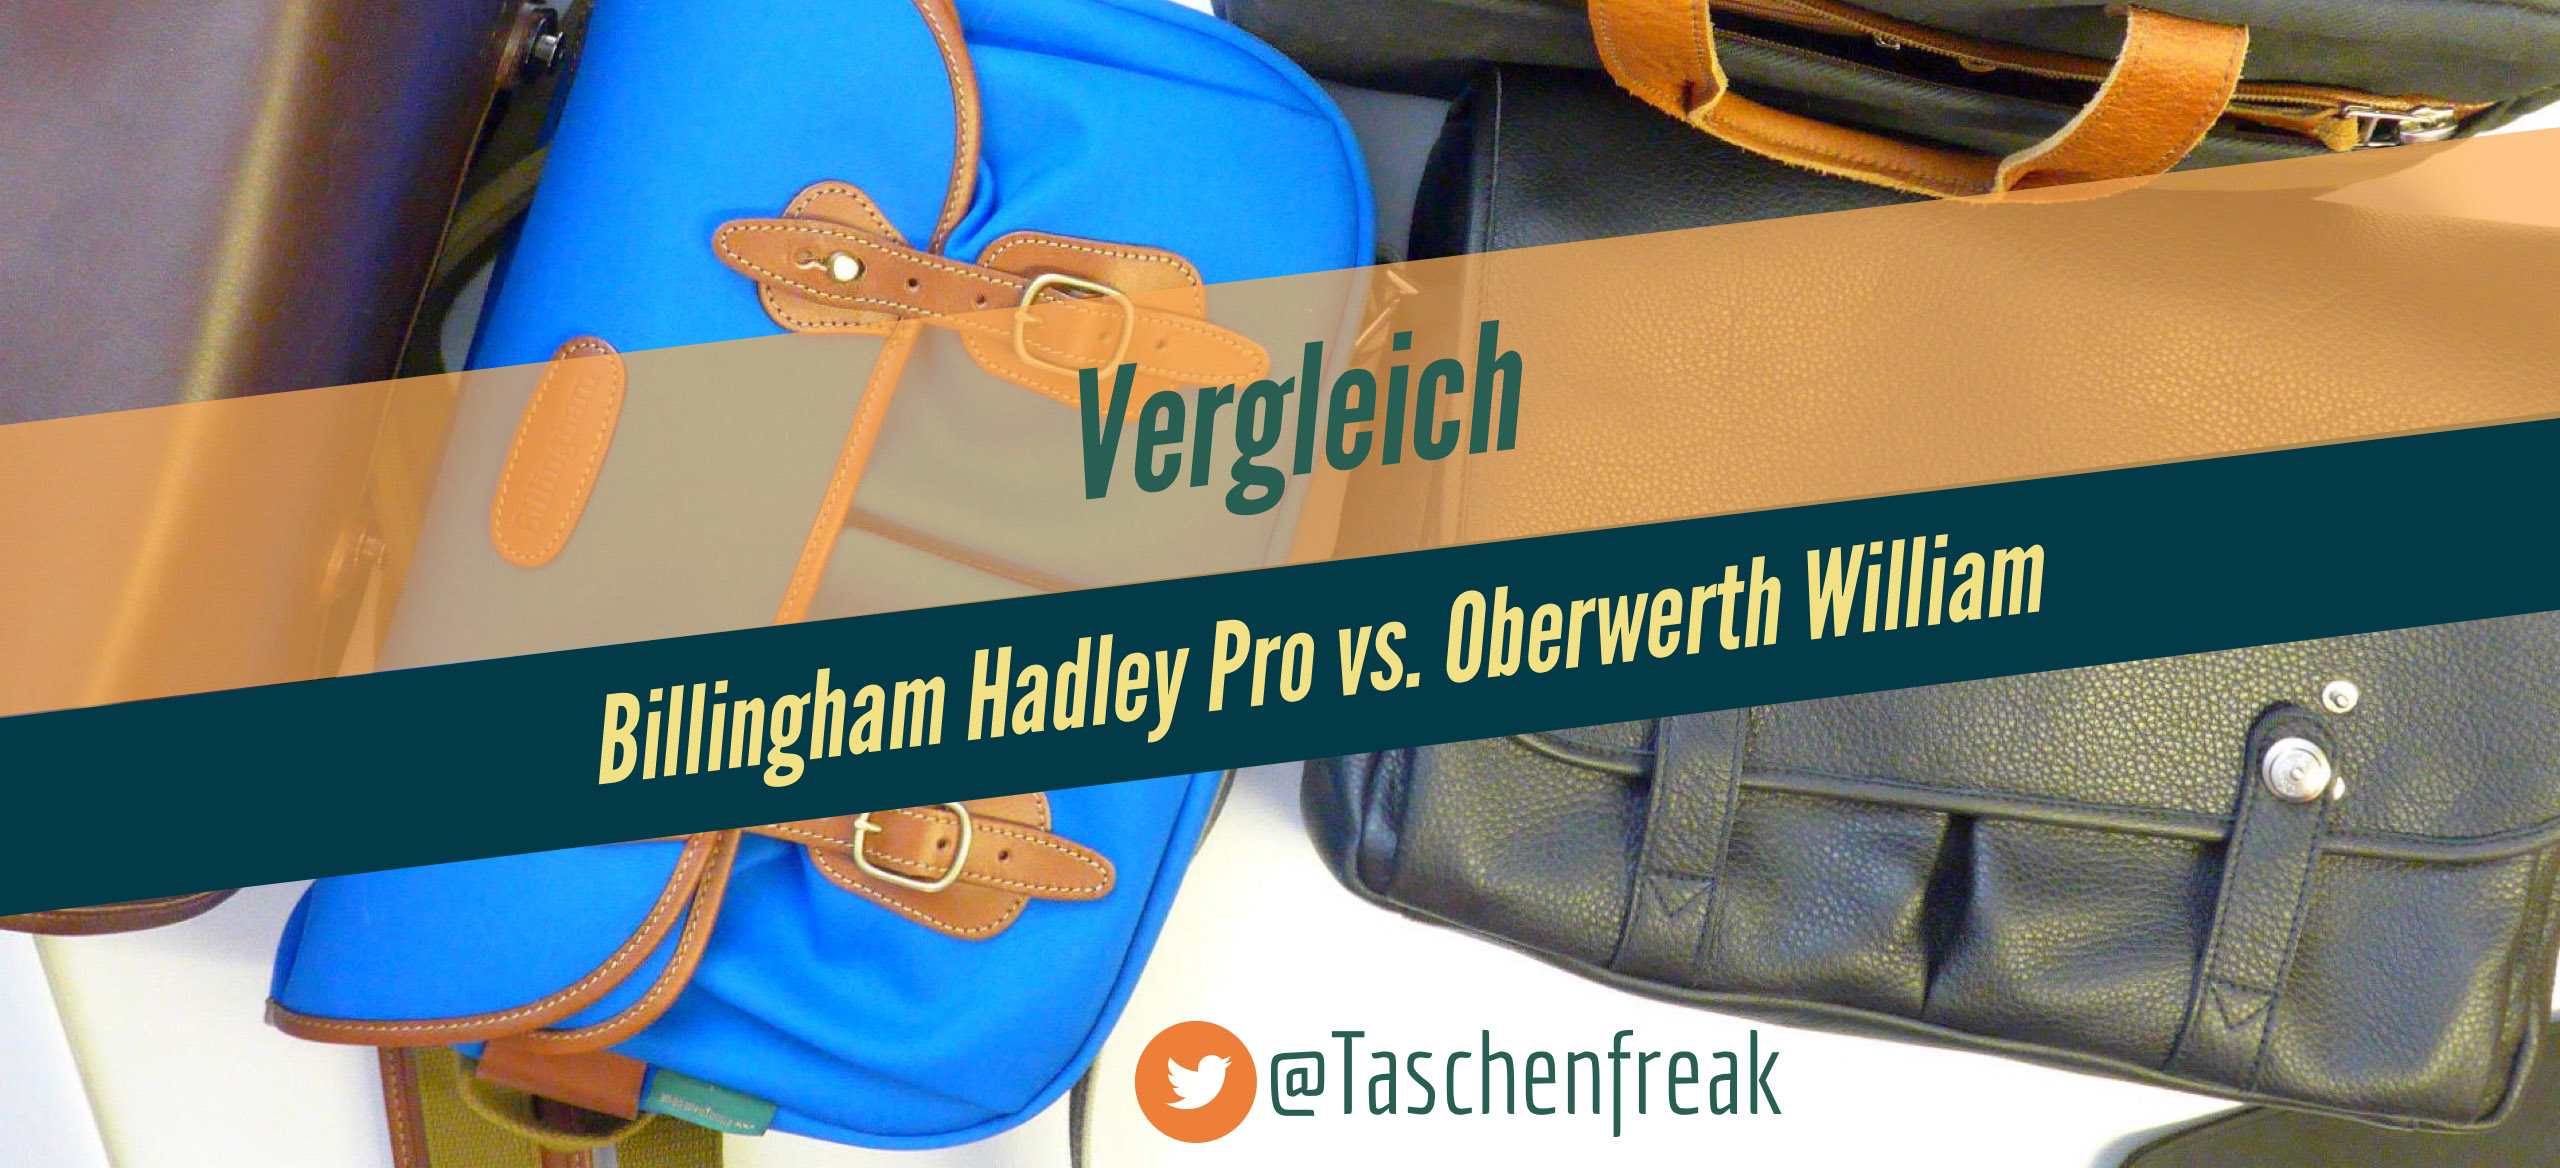 Vergleich der beiden HighEnder: Billingham Hadley Pro vs. Oberwerth William